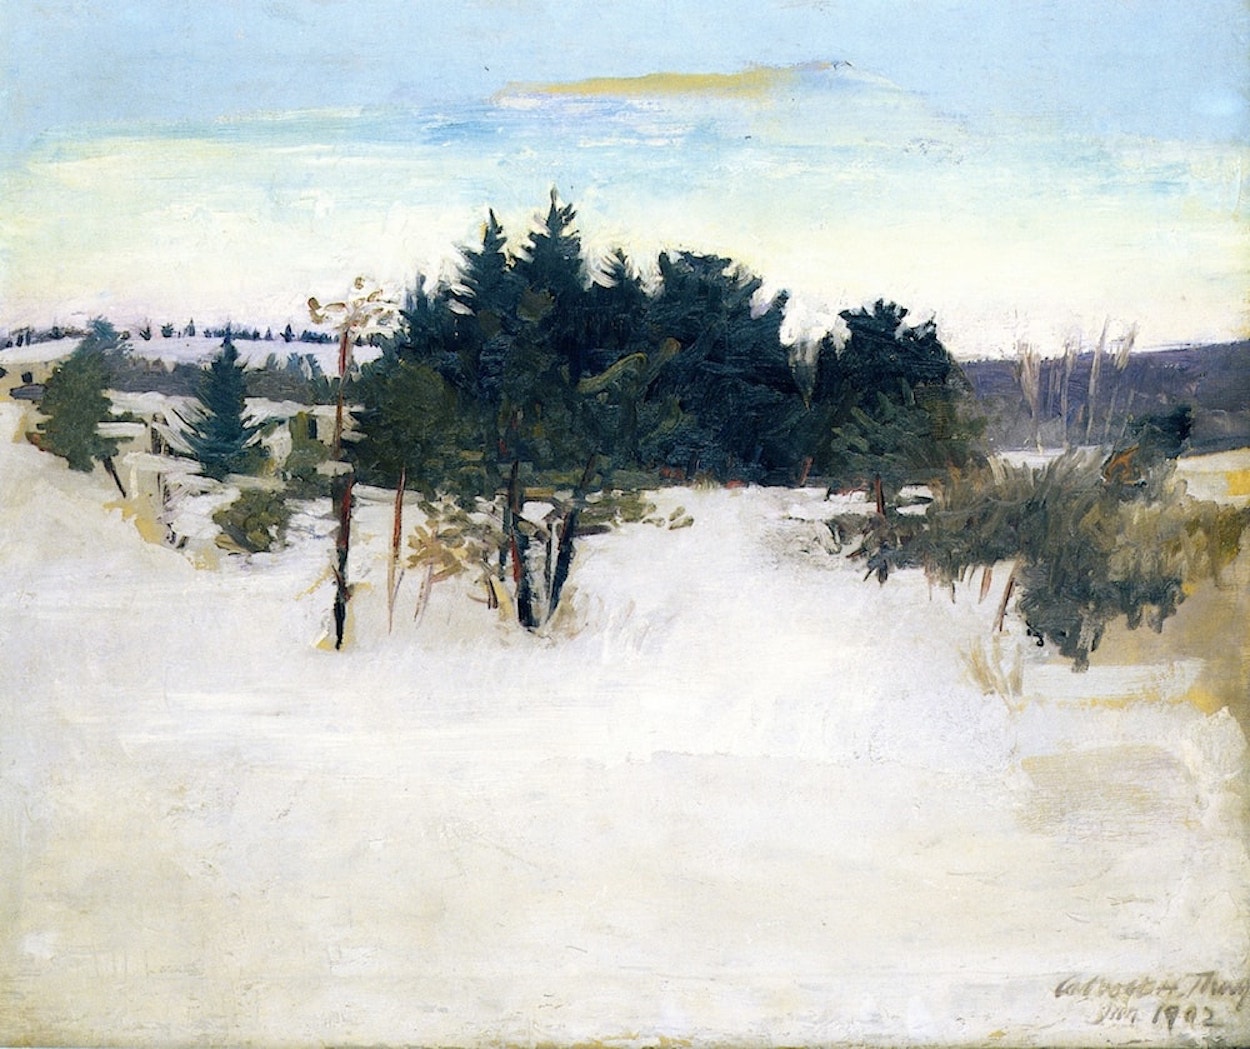 Winter Landscape by Abbott Handerson Thayer - 1902 - 74.6 x 88.6 cm National Academy of Design